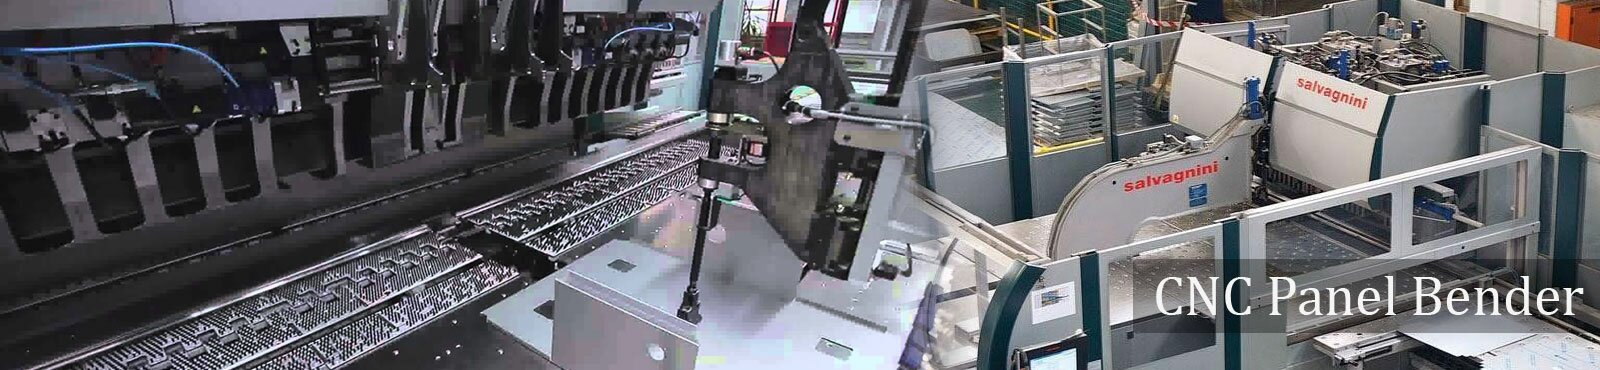 CNC Laser Cutting in India